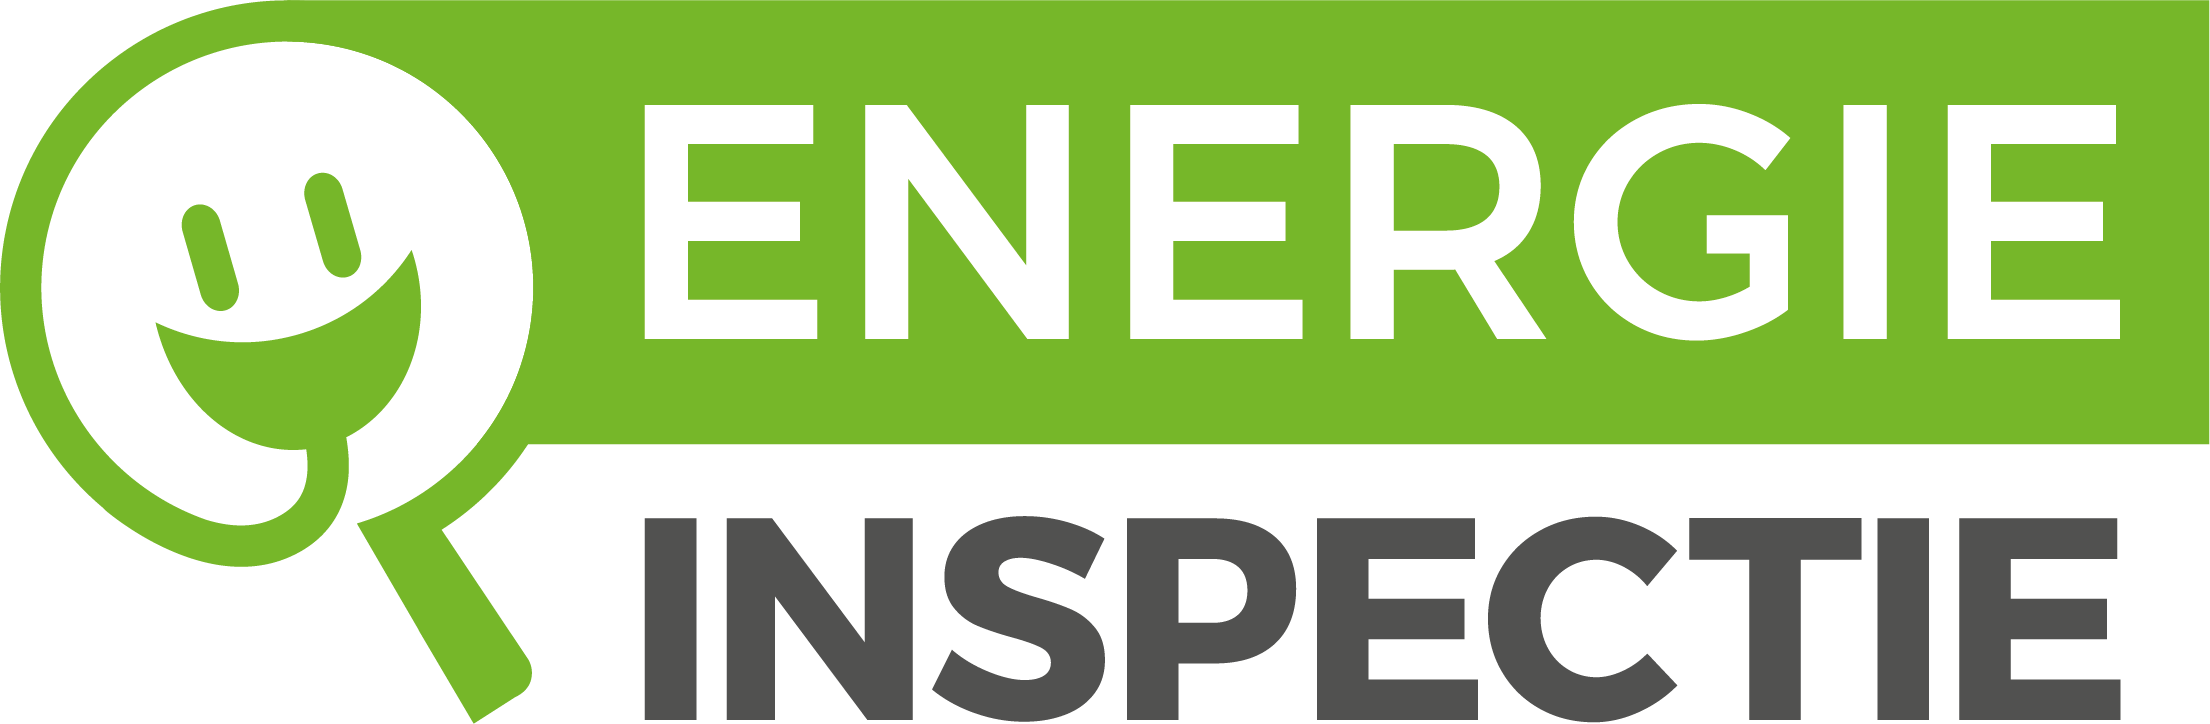 Een logo van energie inspectie. Het woord Energie staat in een groen blok en het woord Inspectie in zwarte letters er onder. Links staat een vergrootglas met een lachend gezichtje er in.